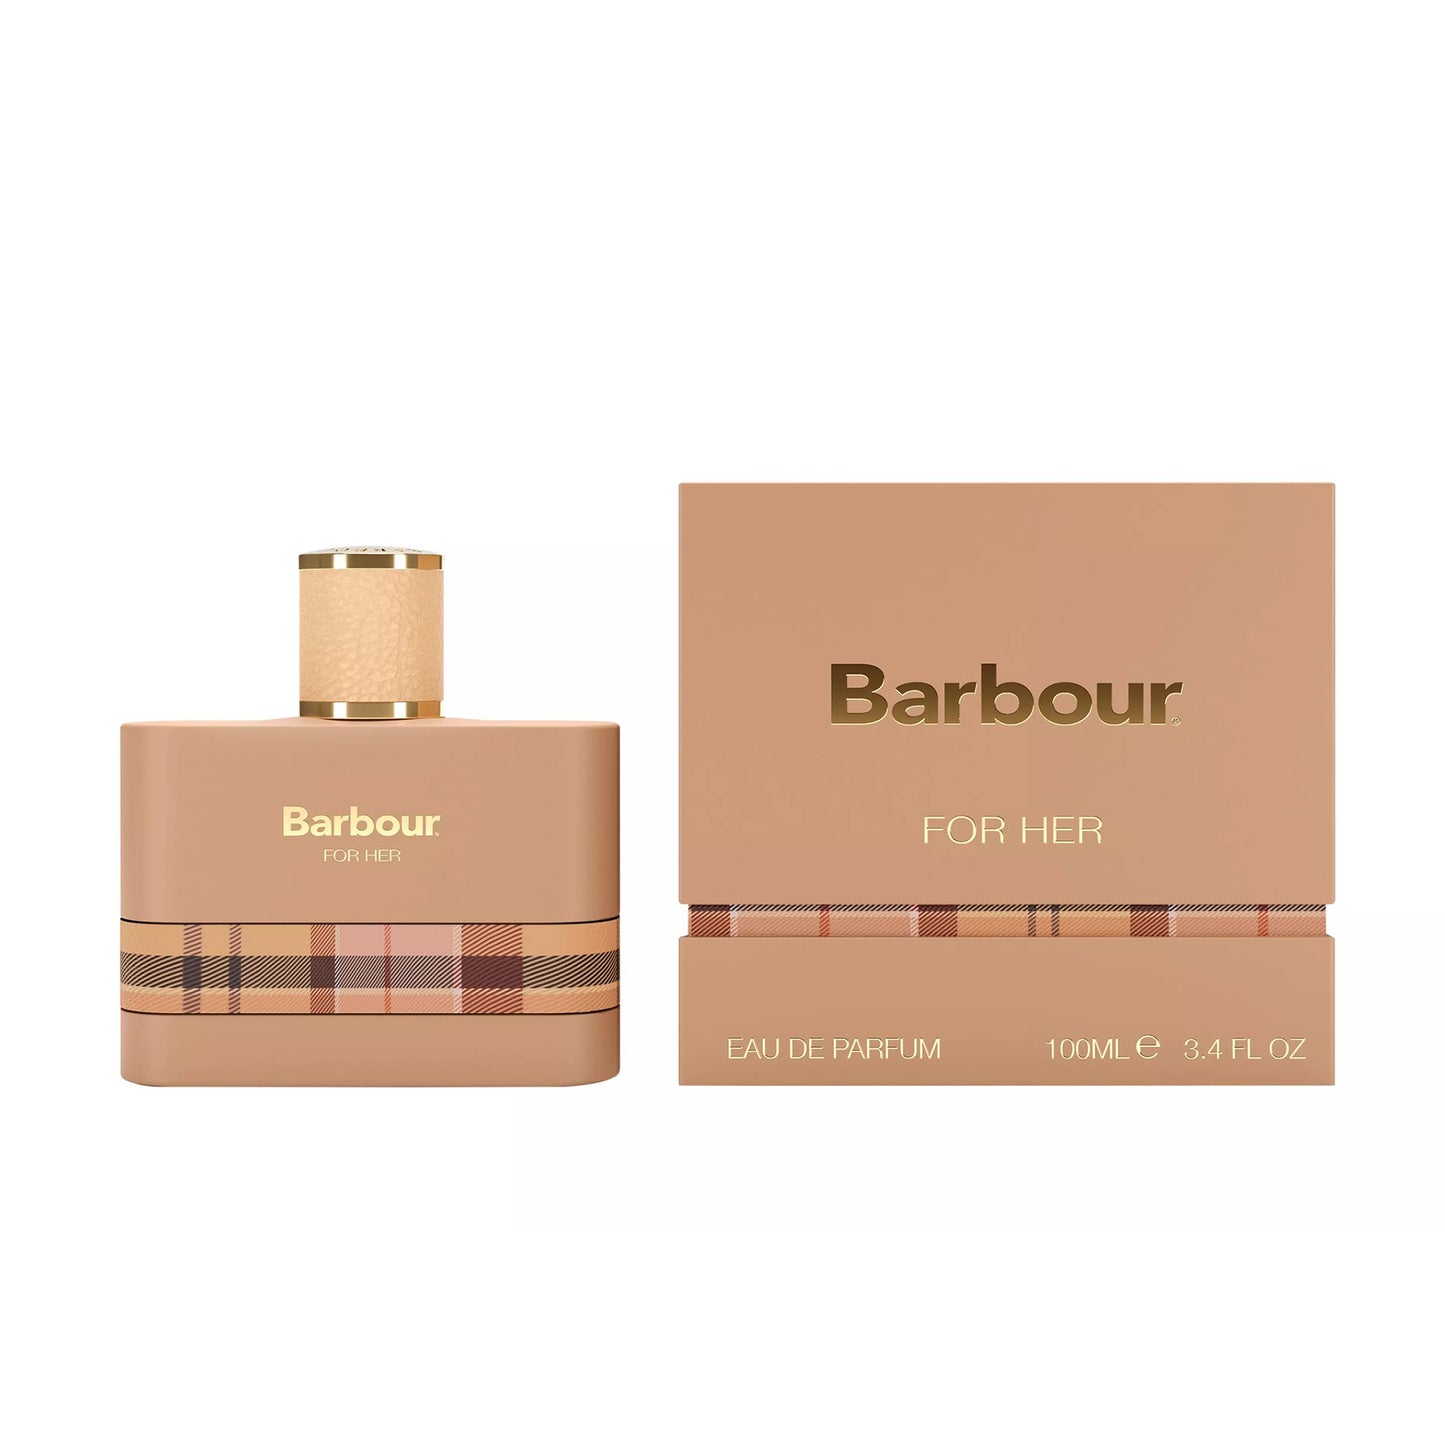 Barbour Origins For Her Eau de Parfum